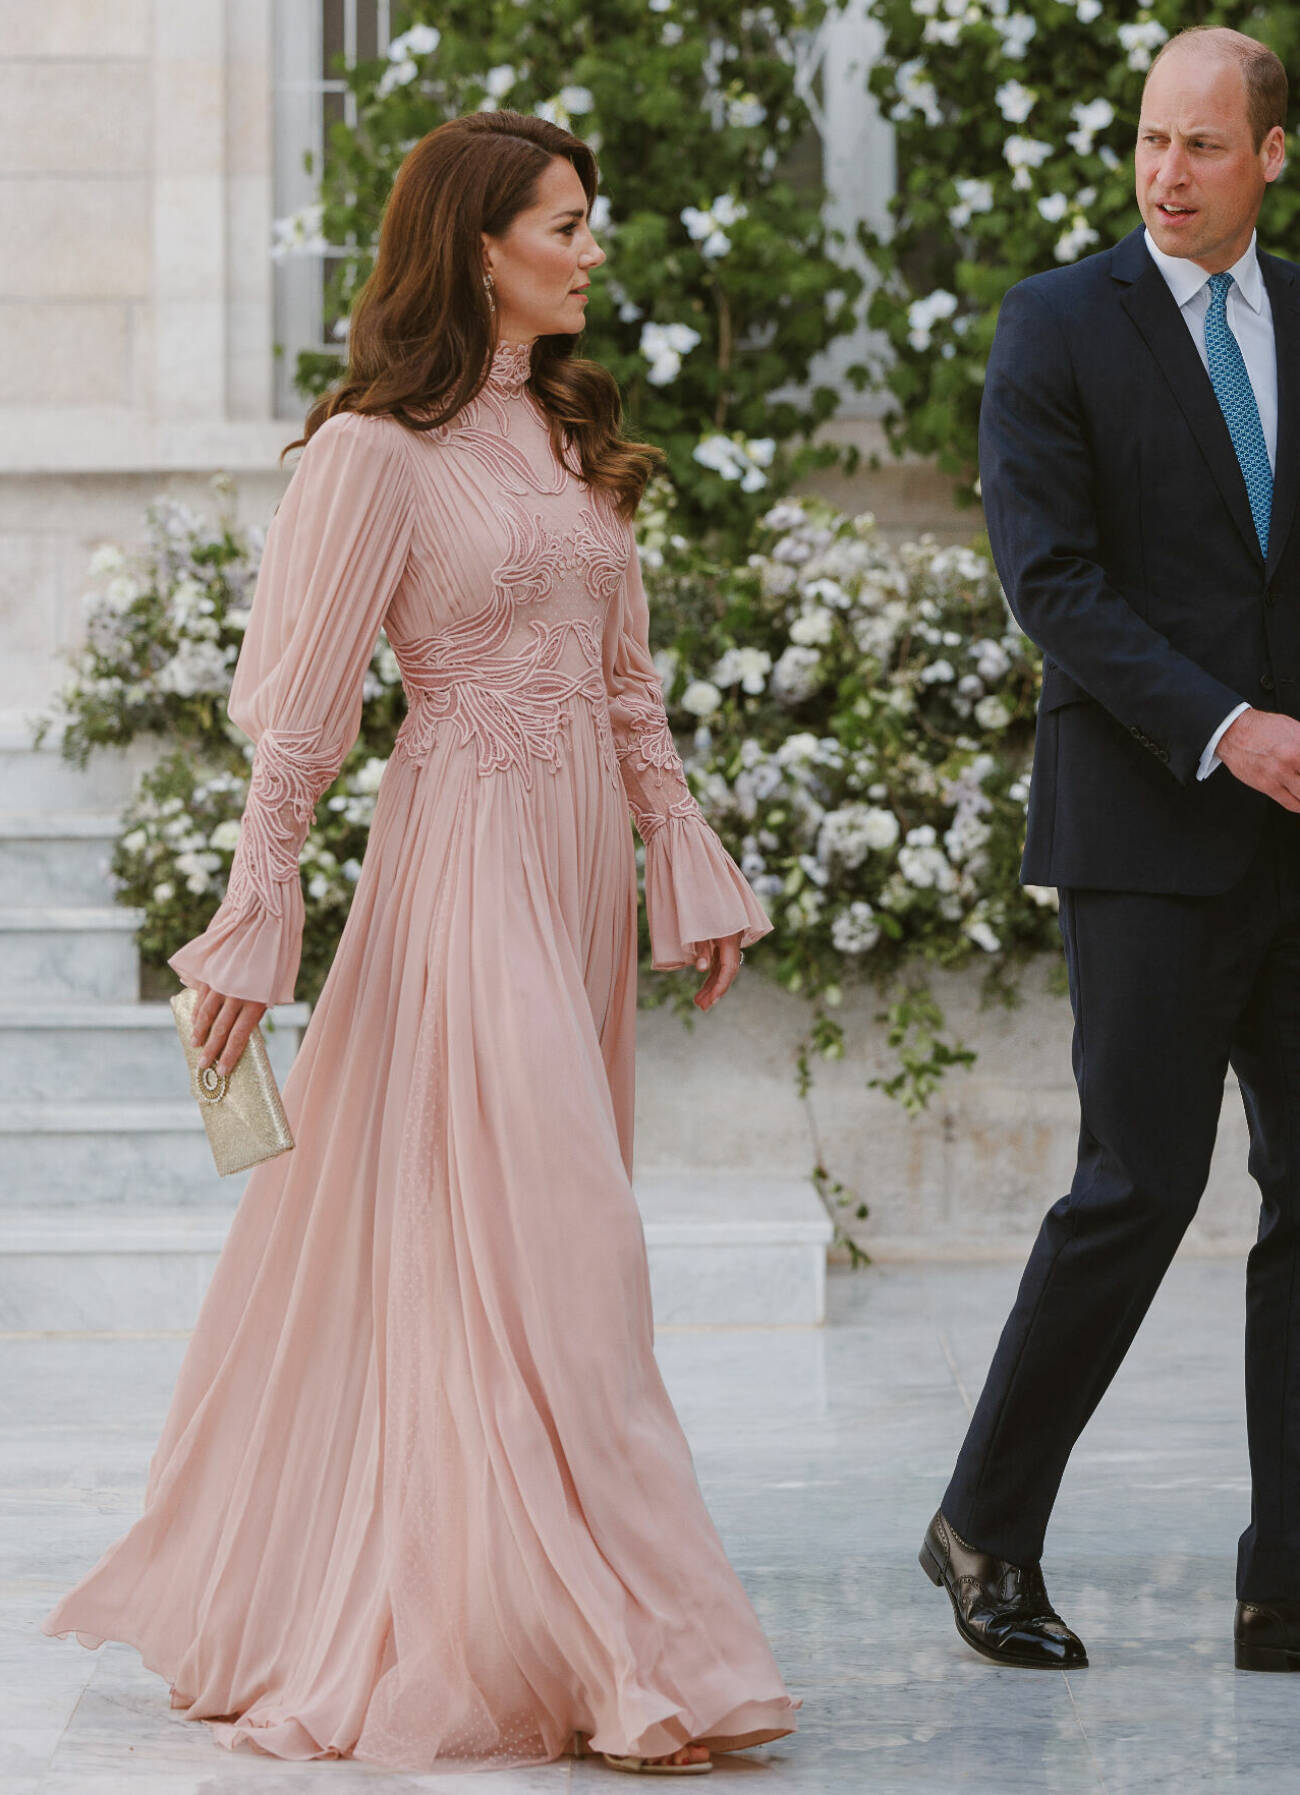 Kungligt bröllop i Jordanien 2023: Prinsessan Kate i puderrosa klänning från Elie Saab